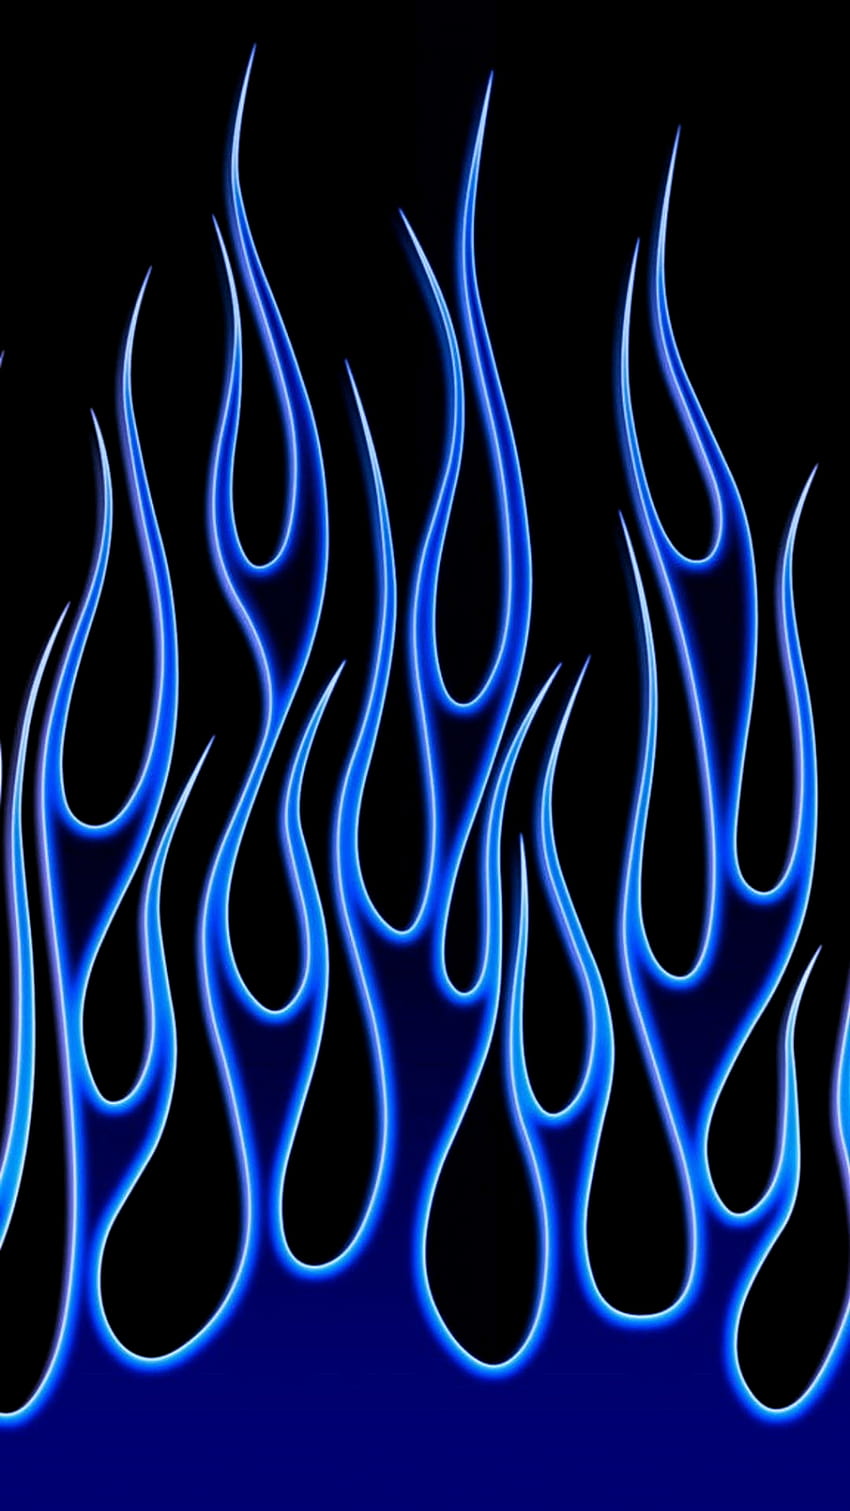 Blue fire aesthetic HD wallpapers | Pxfuel